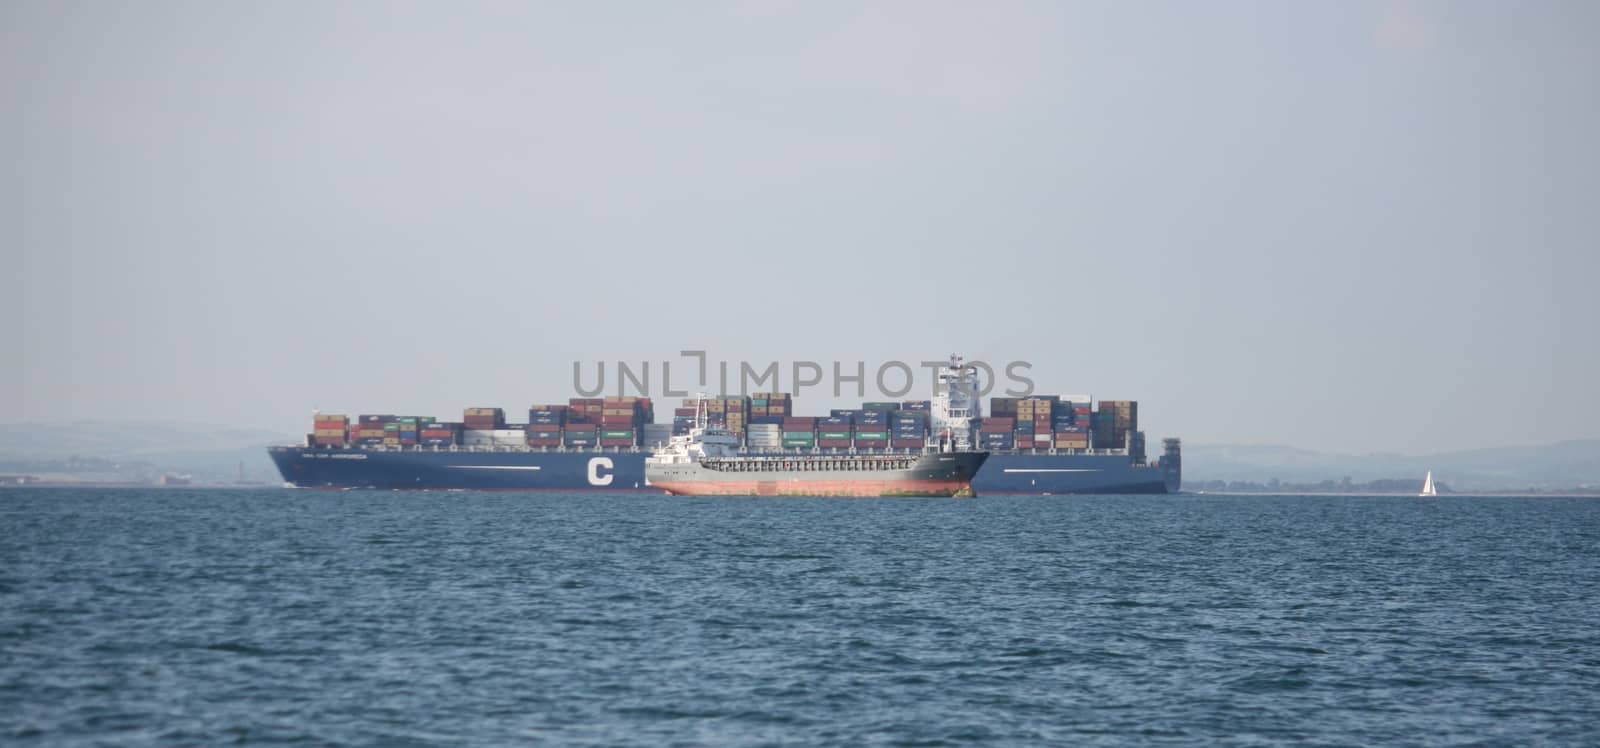 cargo ships passing at sea by chrisga